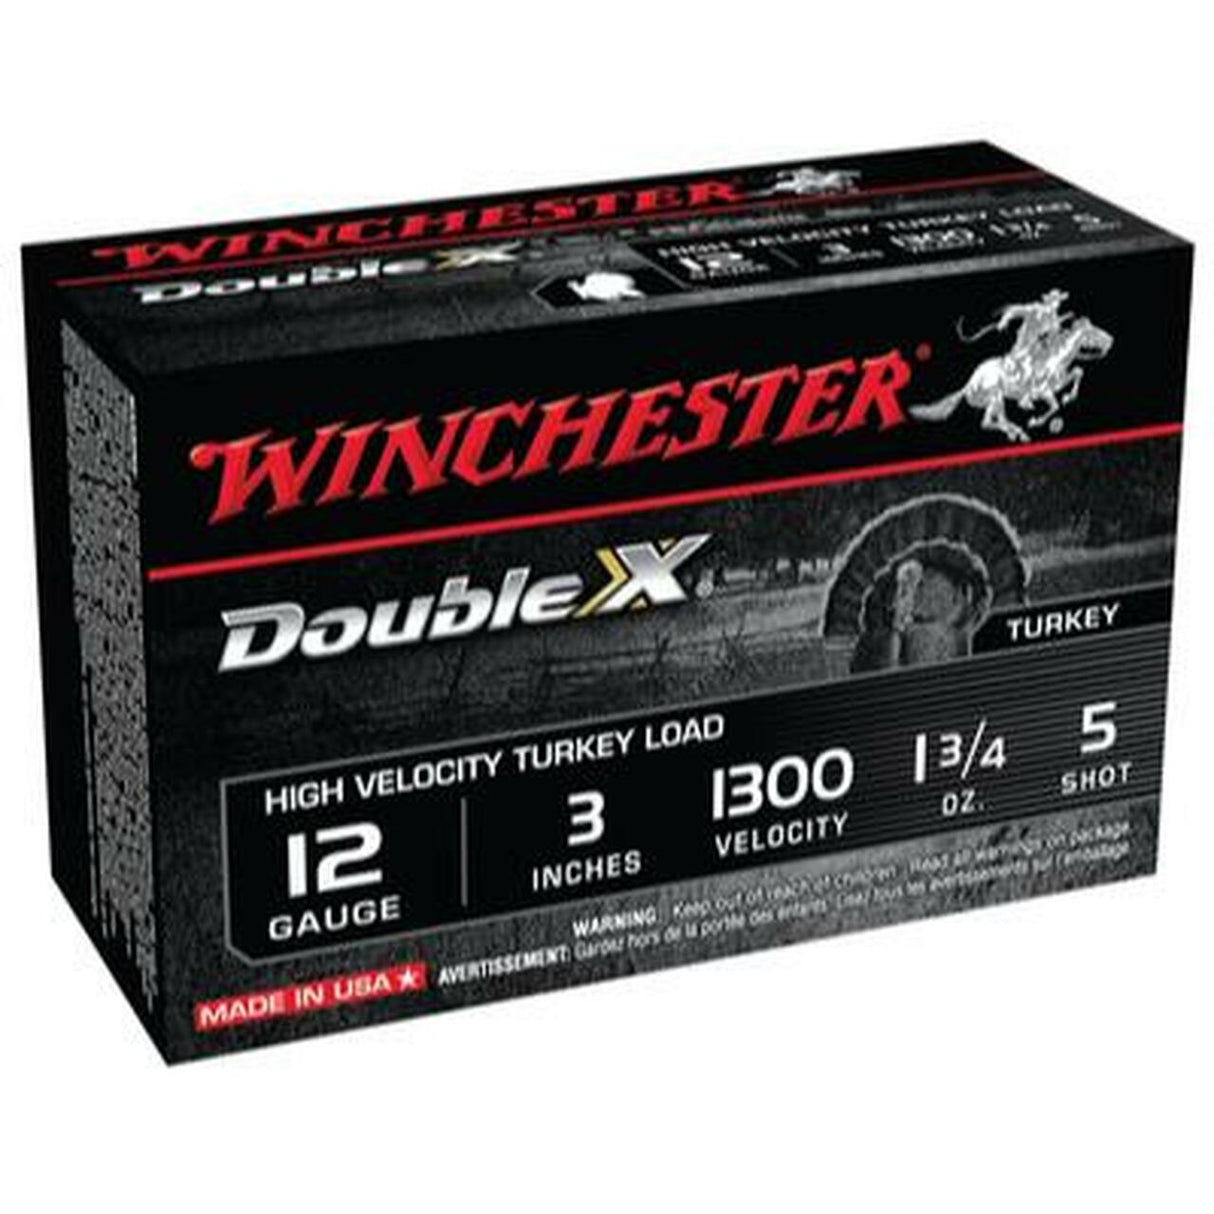 Winchester Double X Cargas de pavo de alta velocidad Calibre 12 3 pulgadas 5 tiros